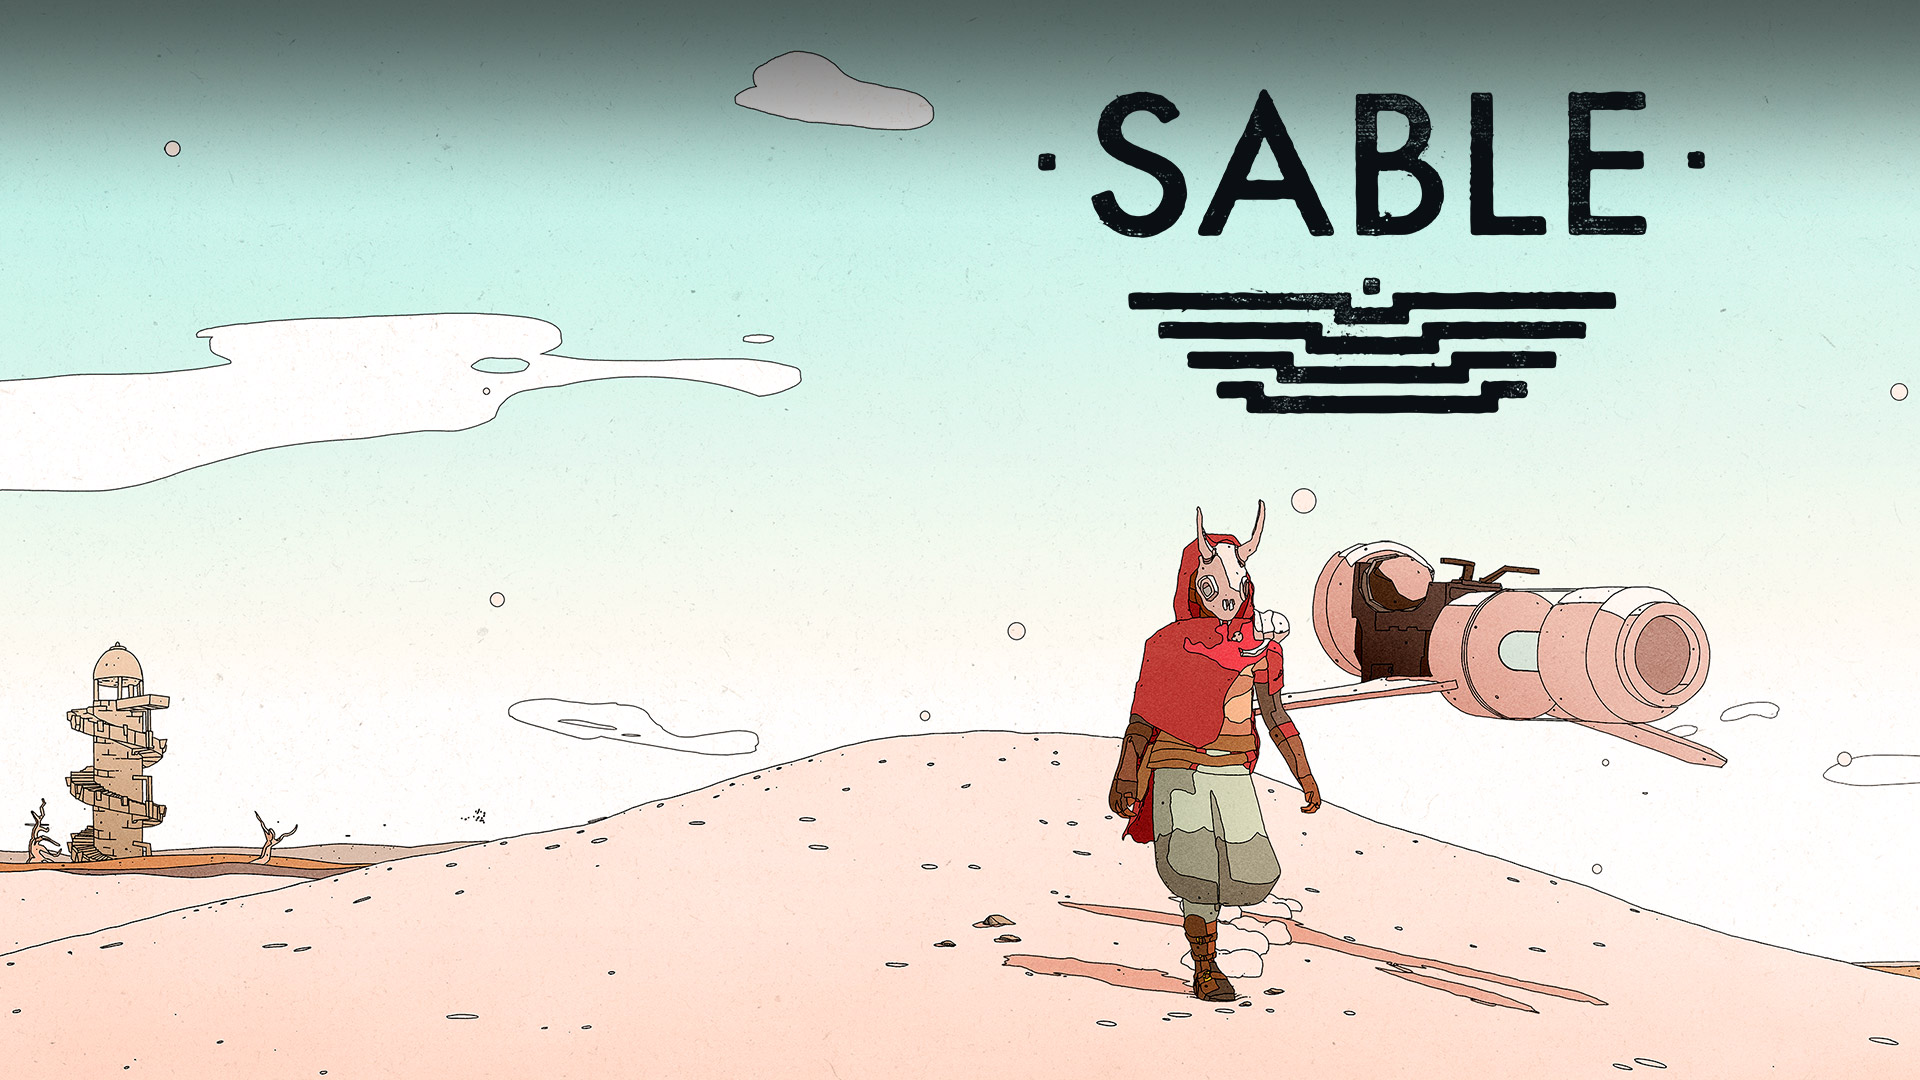 Λογότυπο Sable, η Sable στην έρημο με ένα ιπτάμενο όχημά